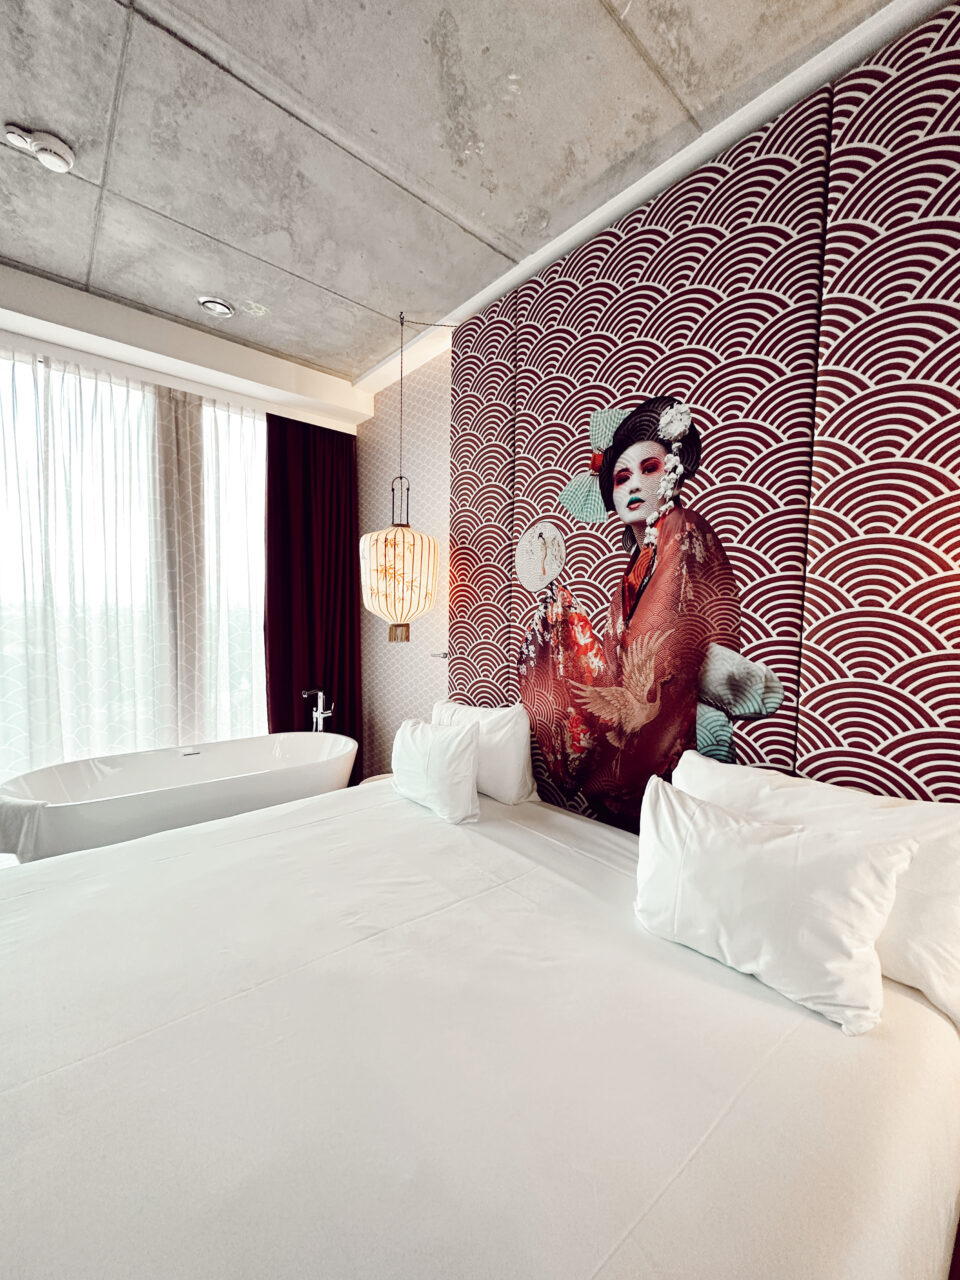 Et hotellrom med kunst av en dame på veggen, dobbelseng og badekar med utsikt ut vinduet. Foto